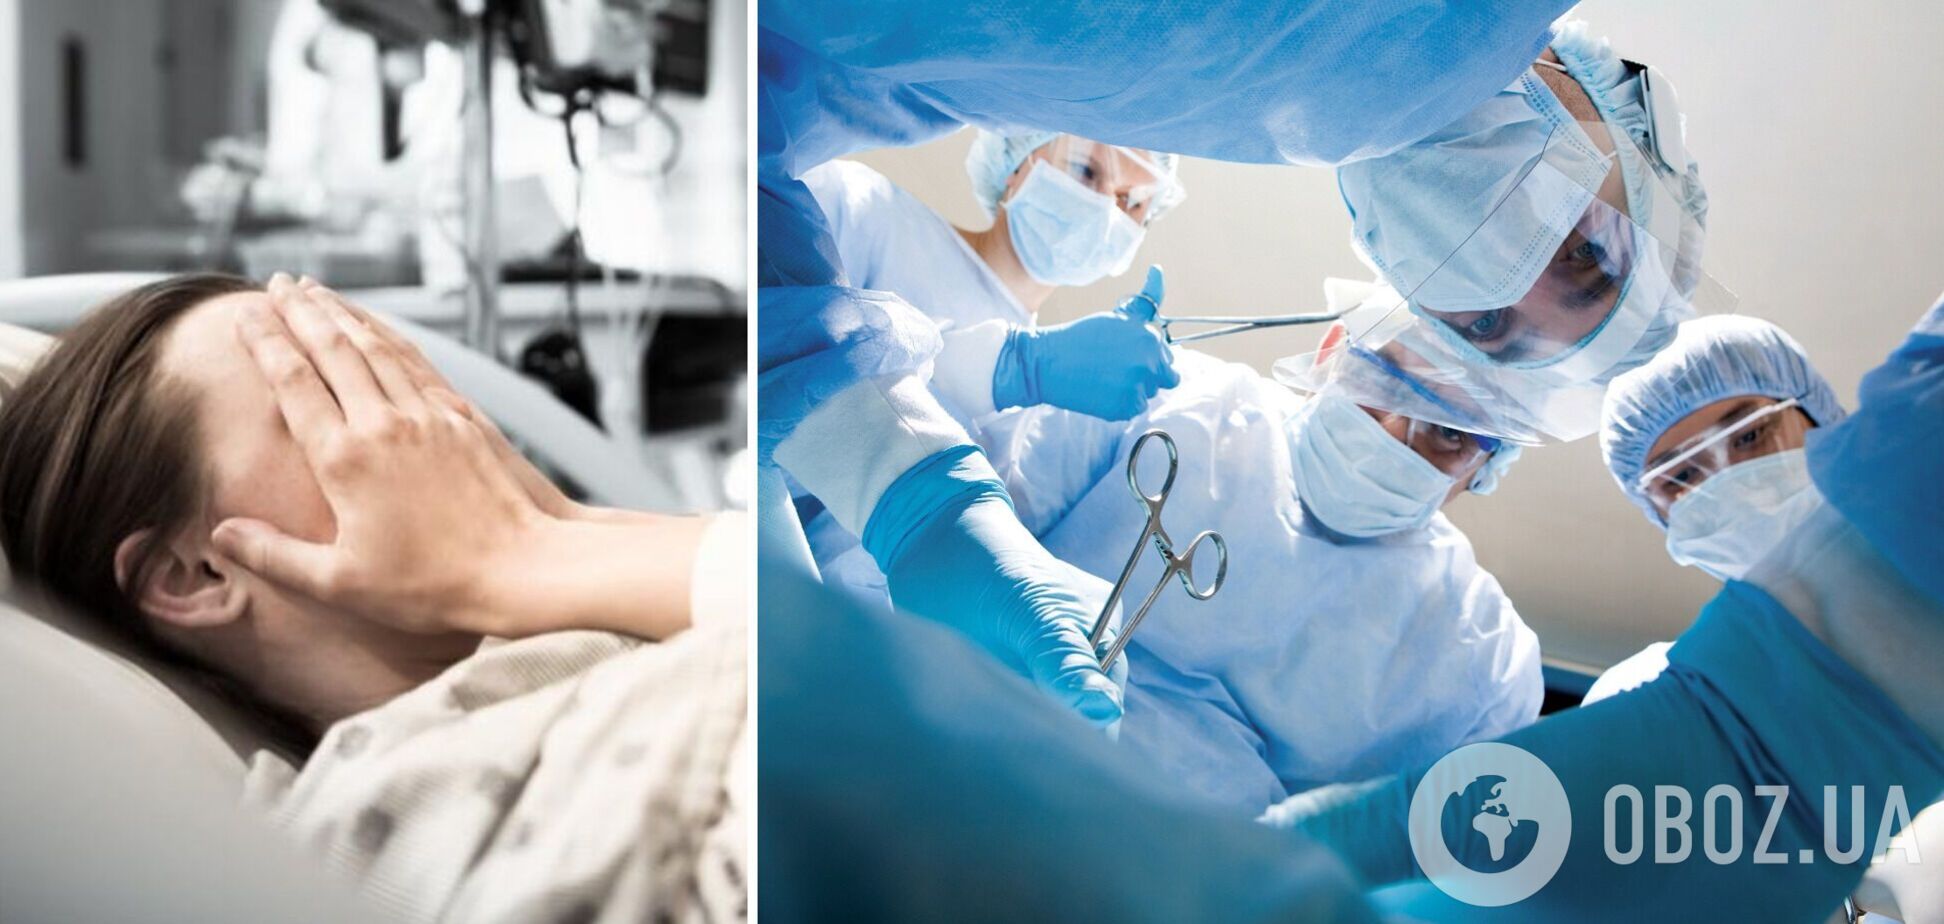 На Прикарпатті у жінки виявили забутий хірургами катетер: вона страждала від болю 1,5 року. Фото